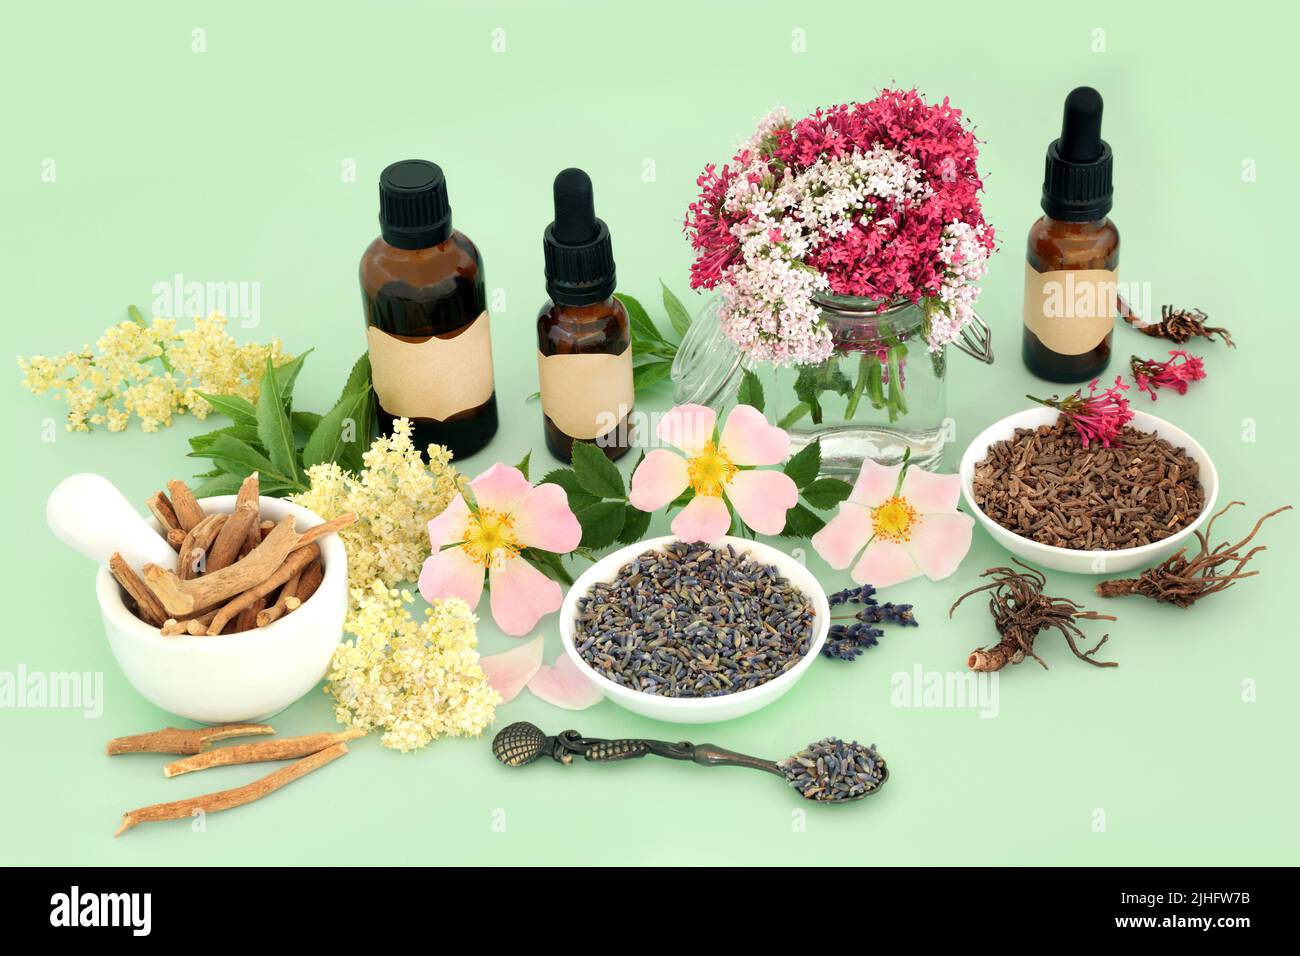 Heilkräuter- und Blumenpräparat für naturheilkundliche pflanzliche Medizin mit Ashwagandha Ginseng, Baldrian, Holunderblüte, Wildrose und Lavendel Stockfoto